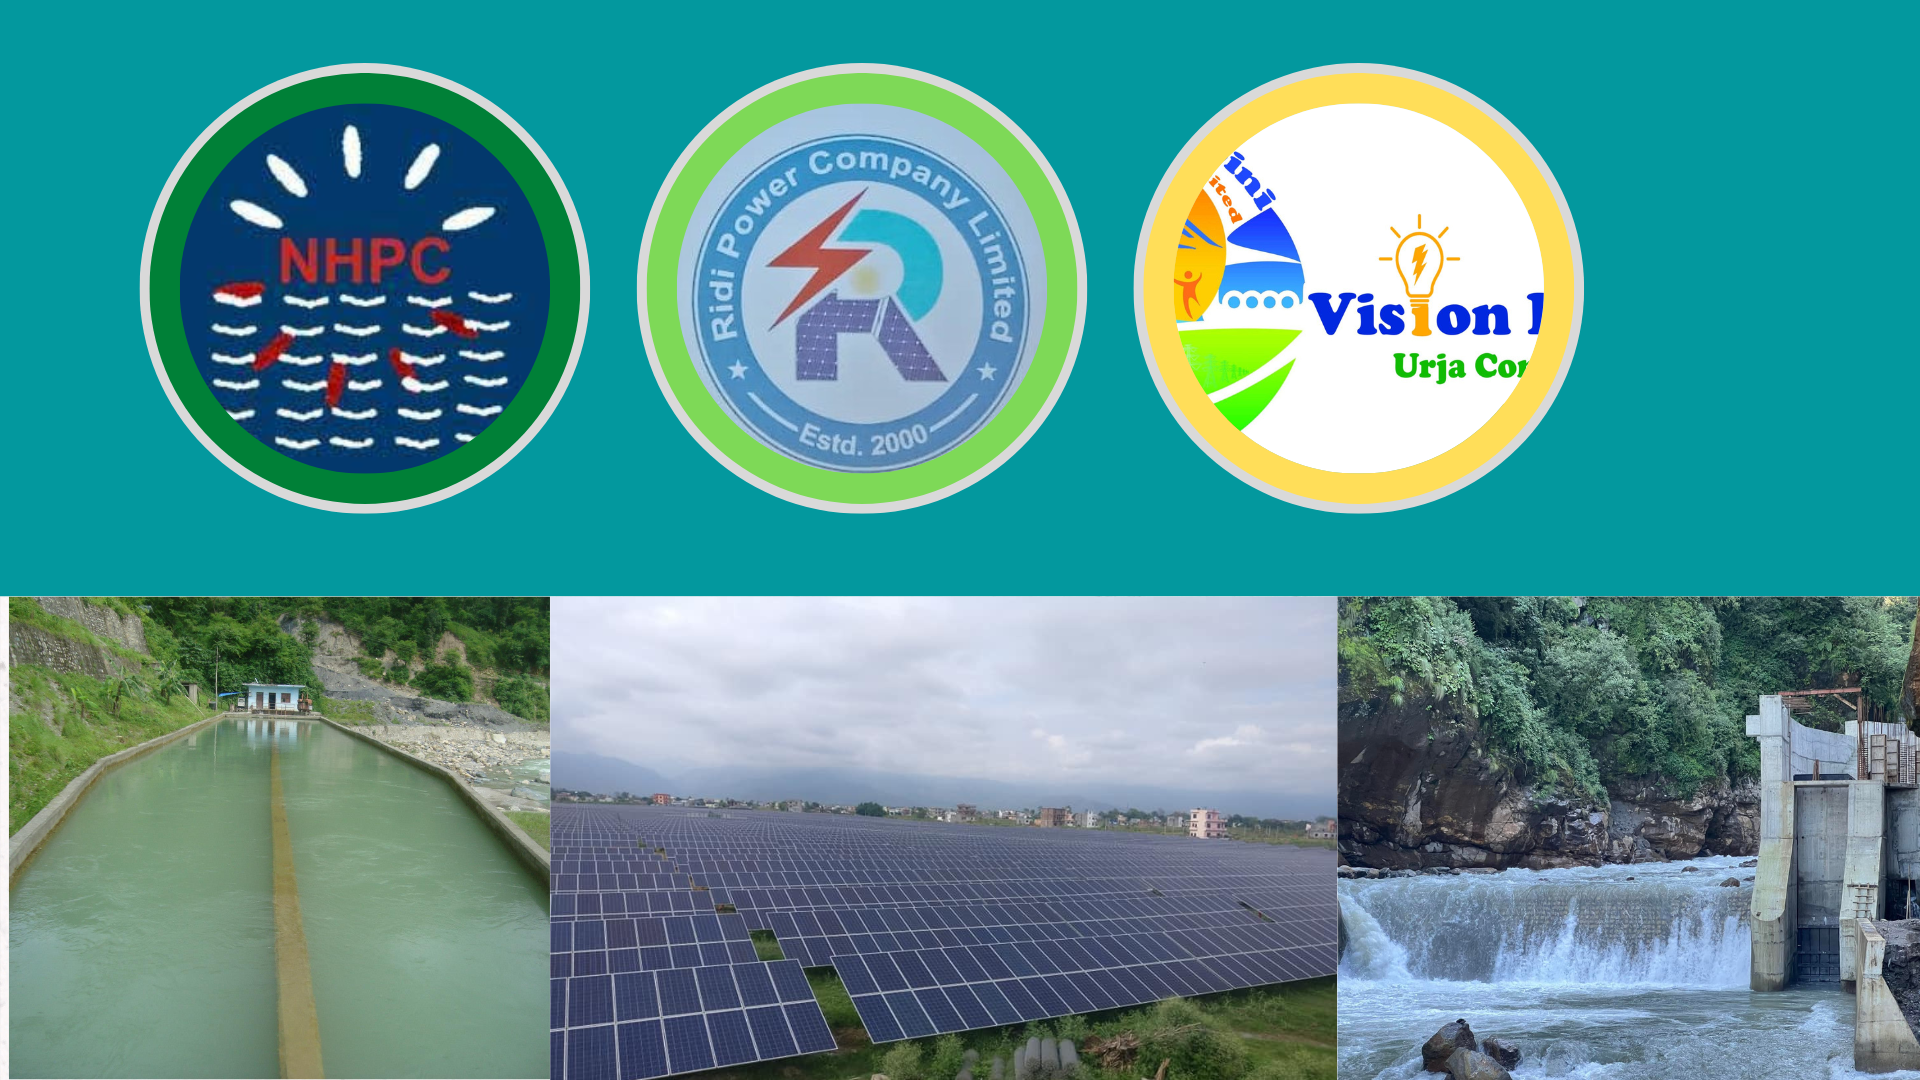 १६ जलविद्युत कम्पनीले मर्जरमा जान लिए आयोगको अनुमति